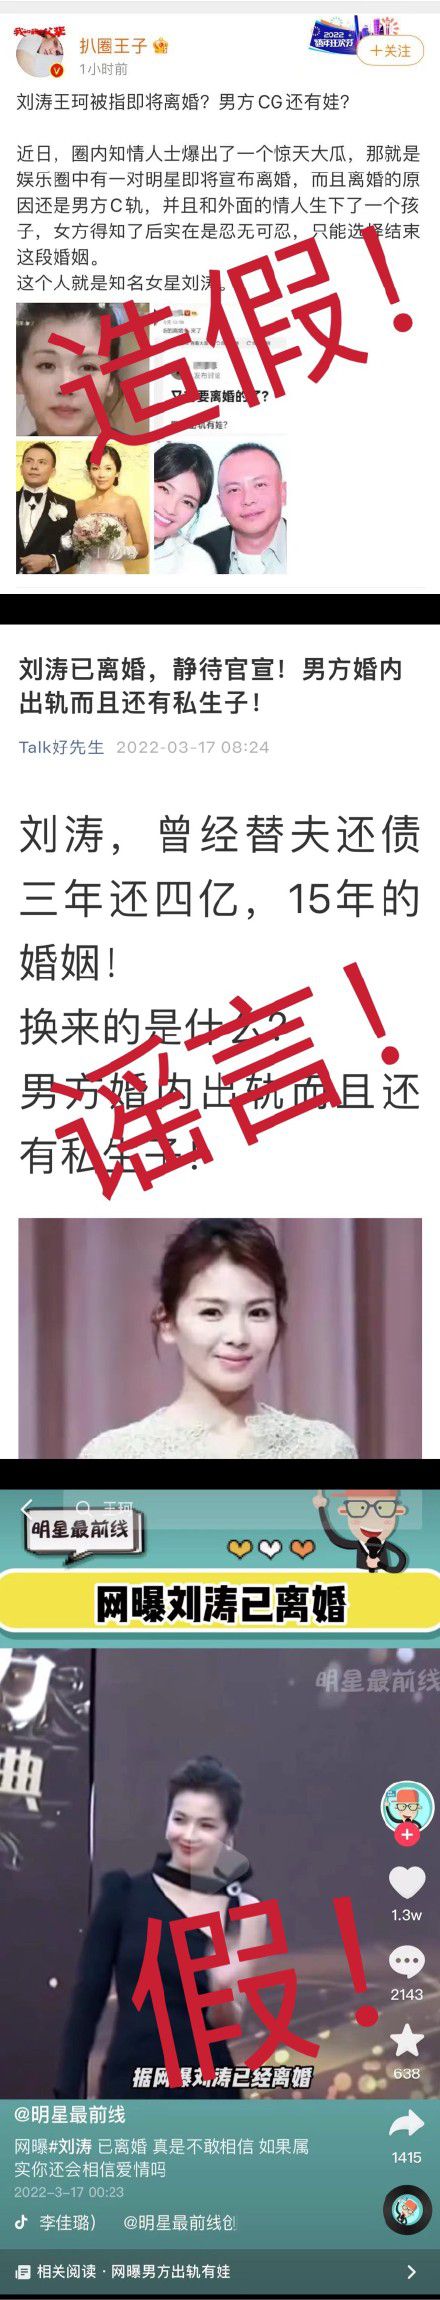 网传刘涛王珂因私生子离婚 女方工作室发声明否认_网易娱乐